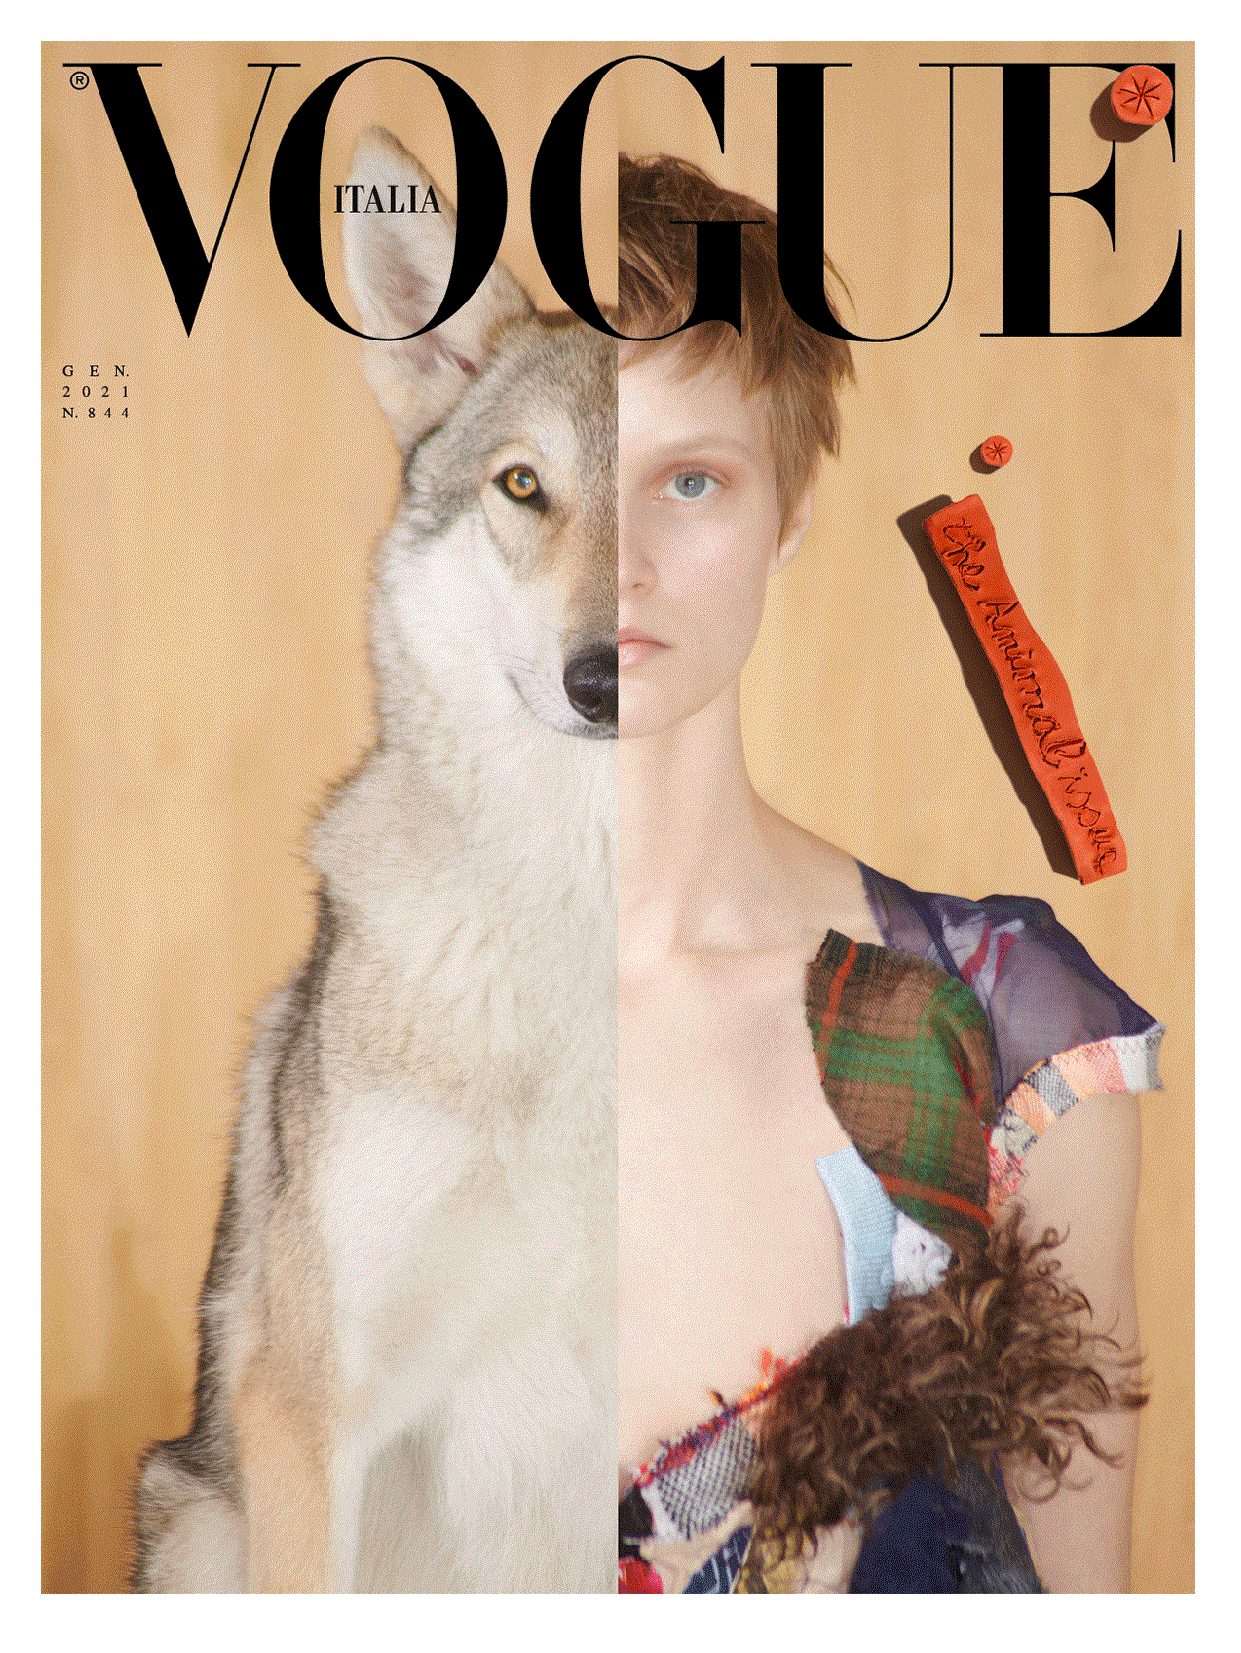 Vogue Italia làm nên lịch sử khi trở thành tạp chí Vogue đầu tiên đưa động vật lên bìa. Đây là số tháng 1/2021 của tạp chí nước Ý